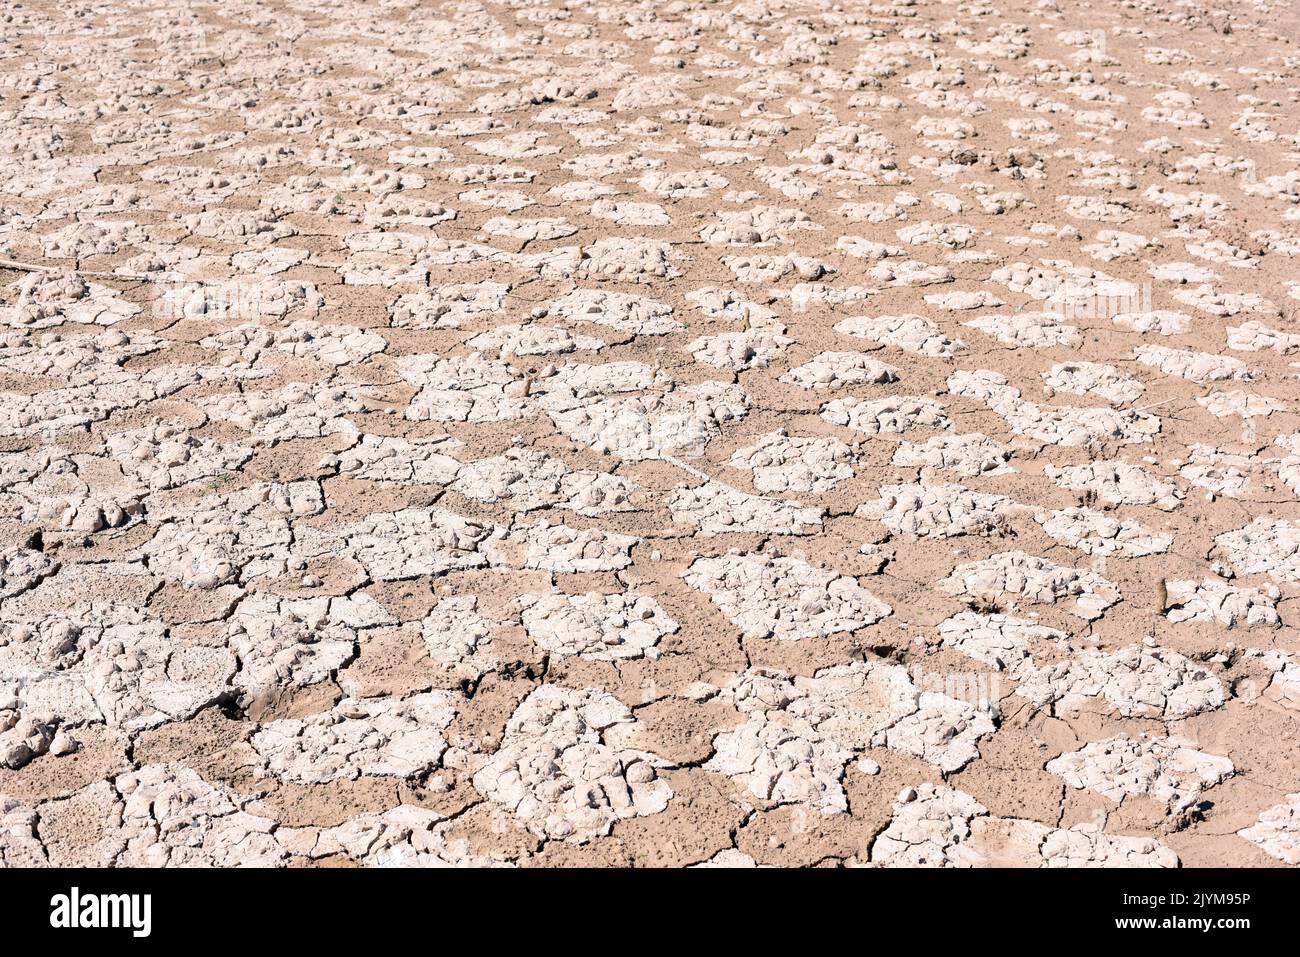 Tierra seca, cuarteada, debido a la sequía, producido por el cambio climático Stock Photo